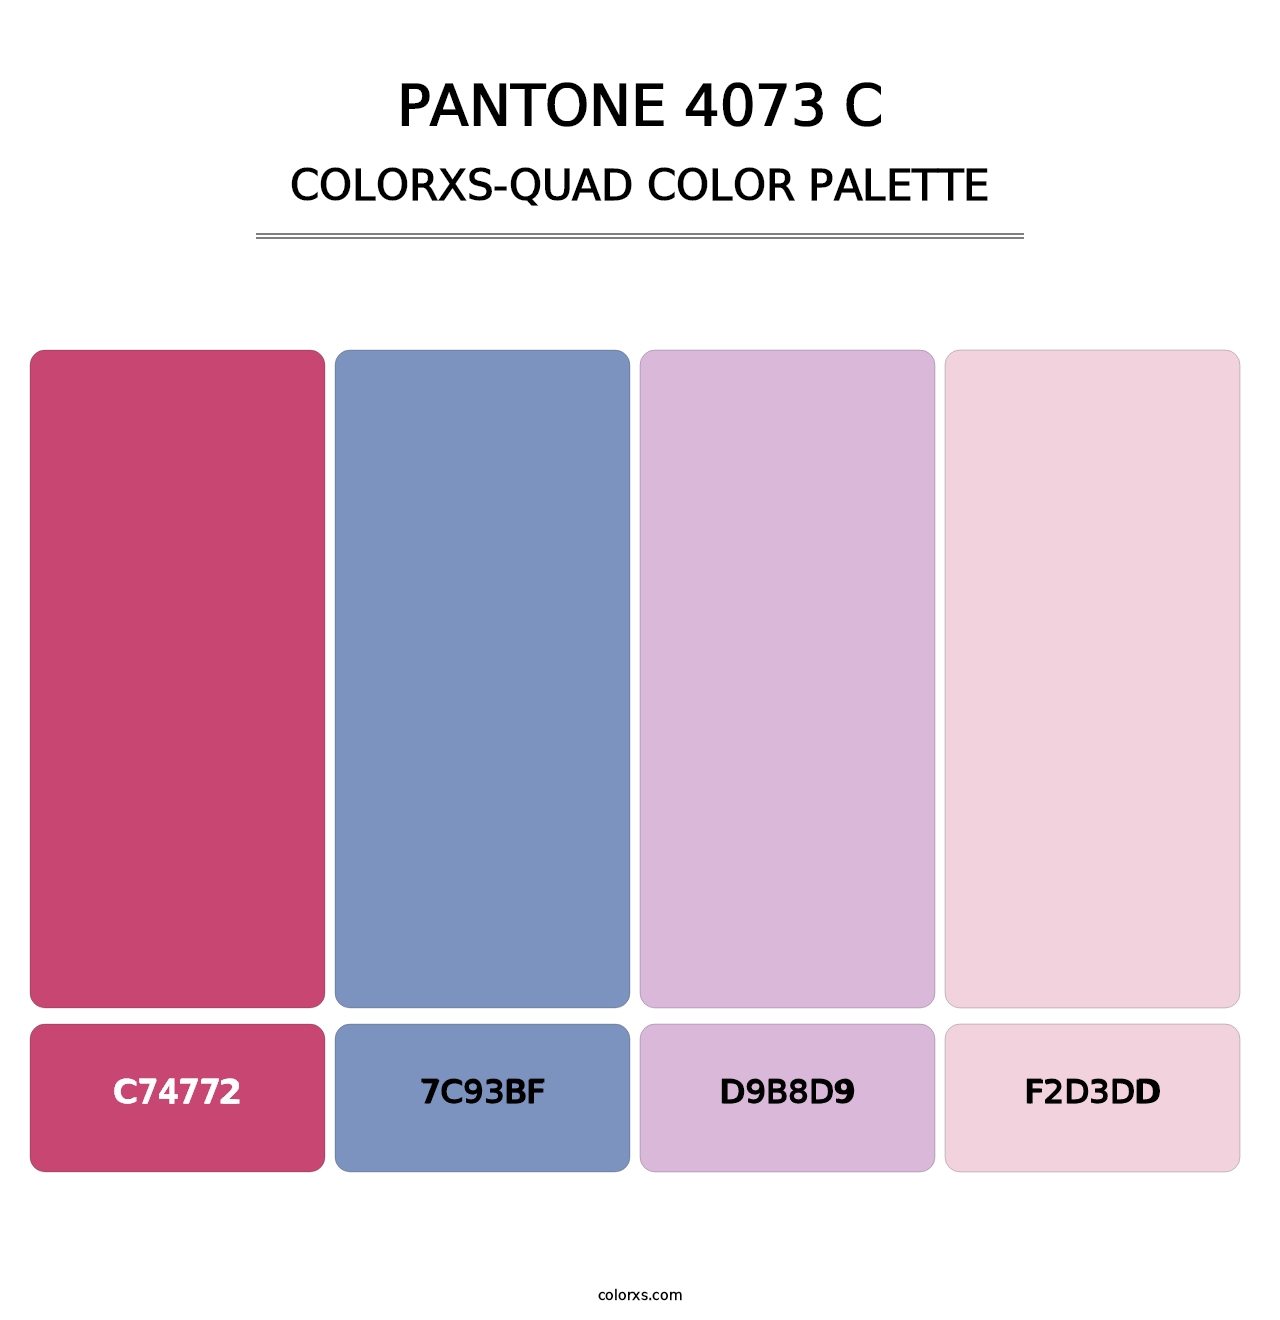 PANTONE 4073 C - Colorxs Quad Palette